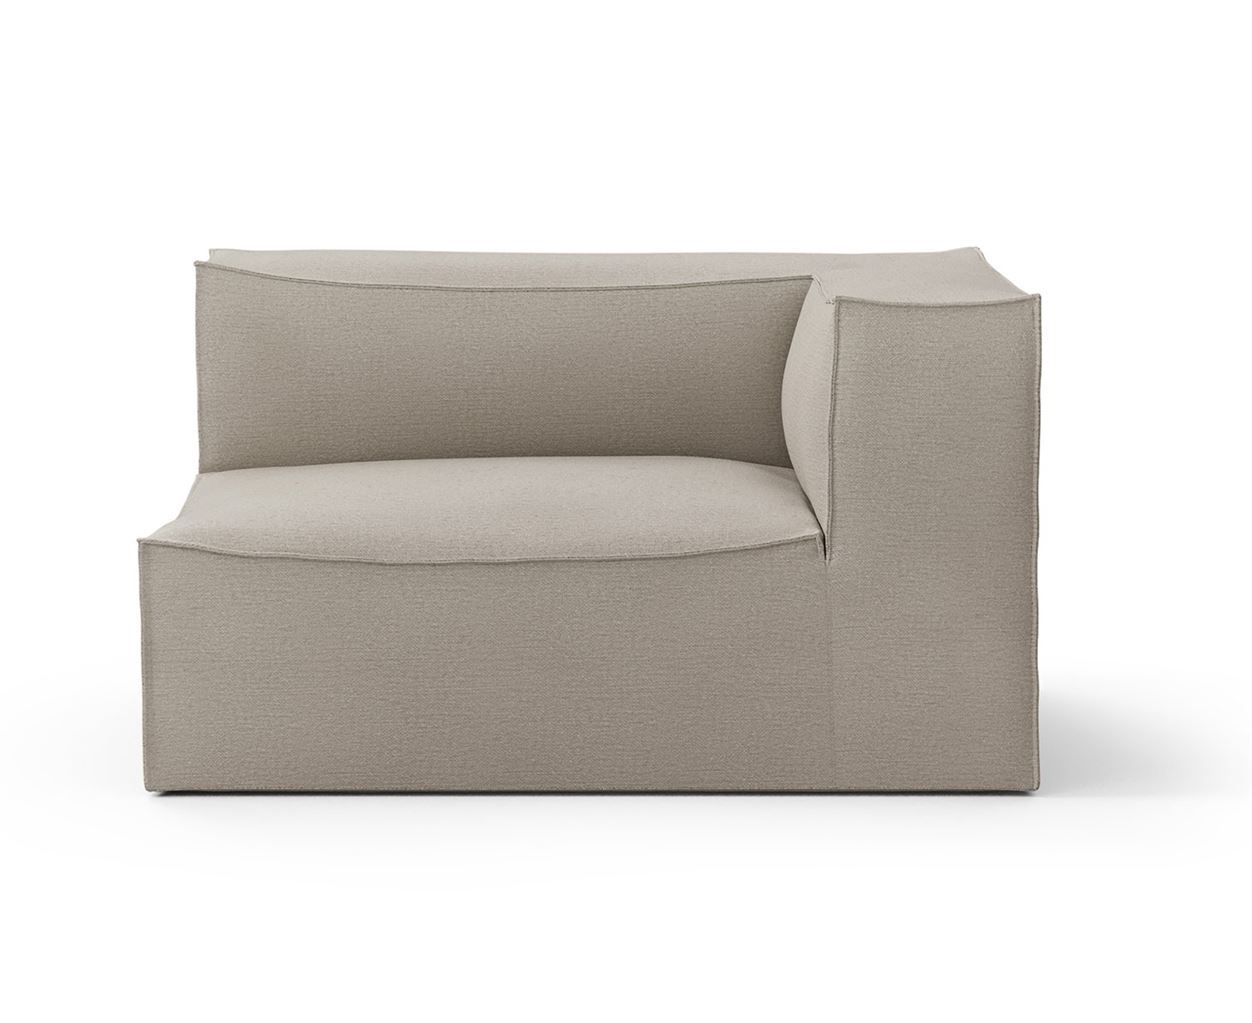 Billede af Ferm Living Catena Sofa Armrest Right Cotton Linen L401 76x138 cm - Natural 